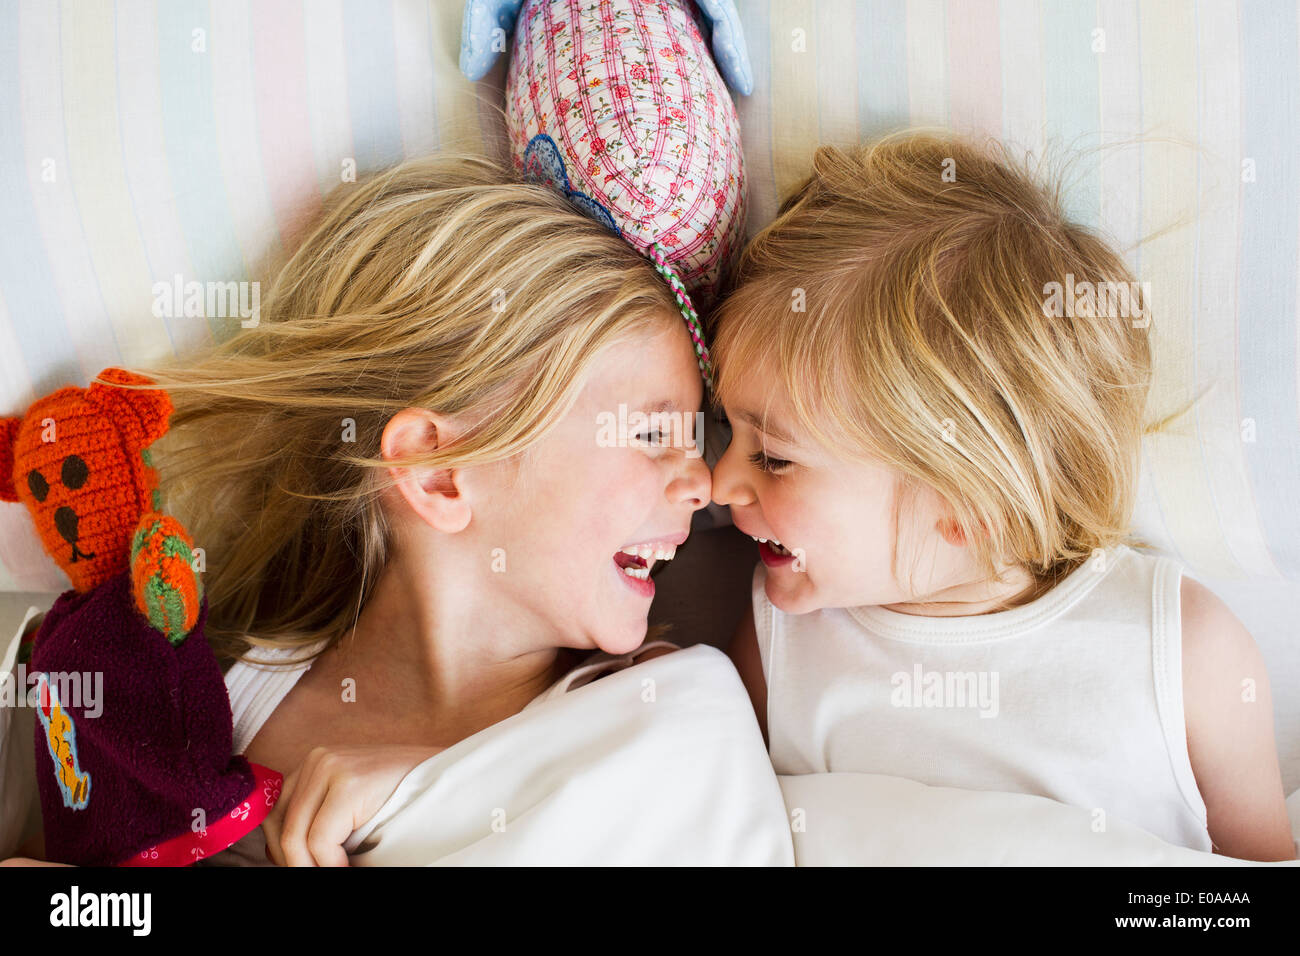 Porträt von zwei jungen Schwestern von Angesicht zu Angesicht im Bett liegend Stockfoto